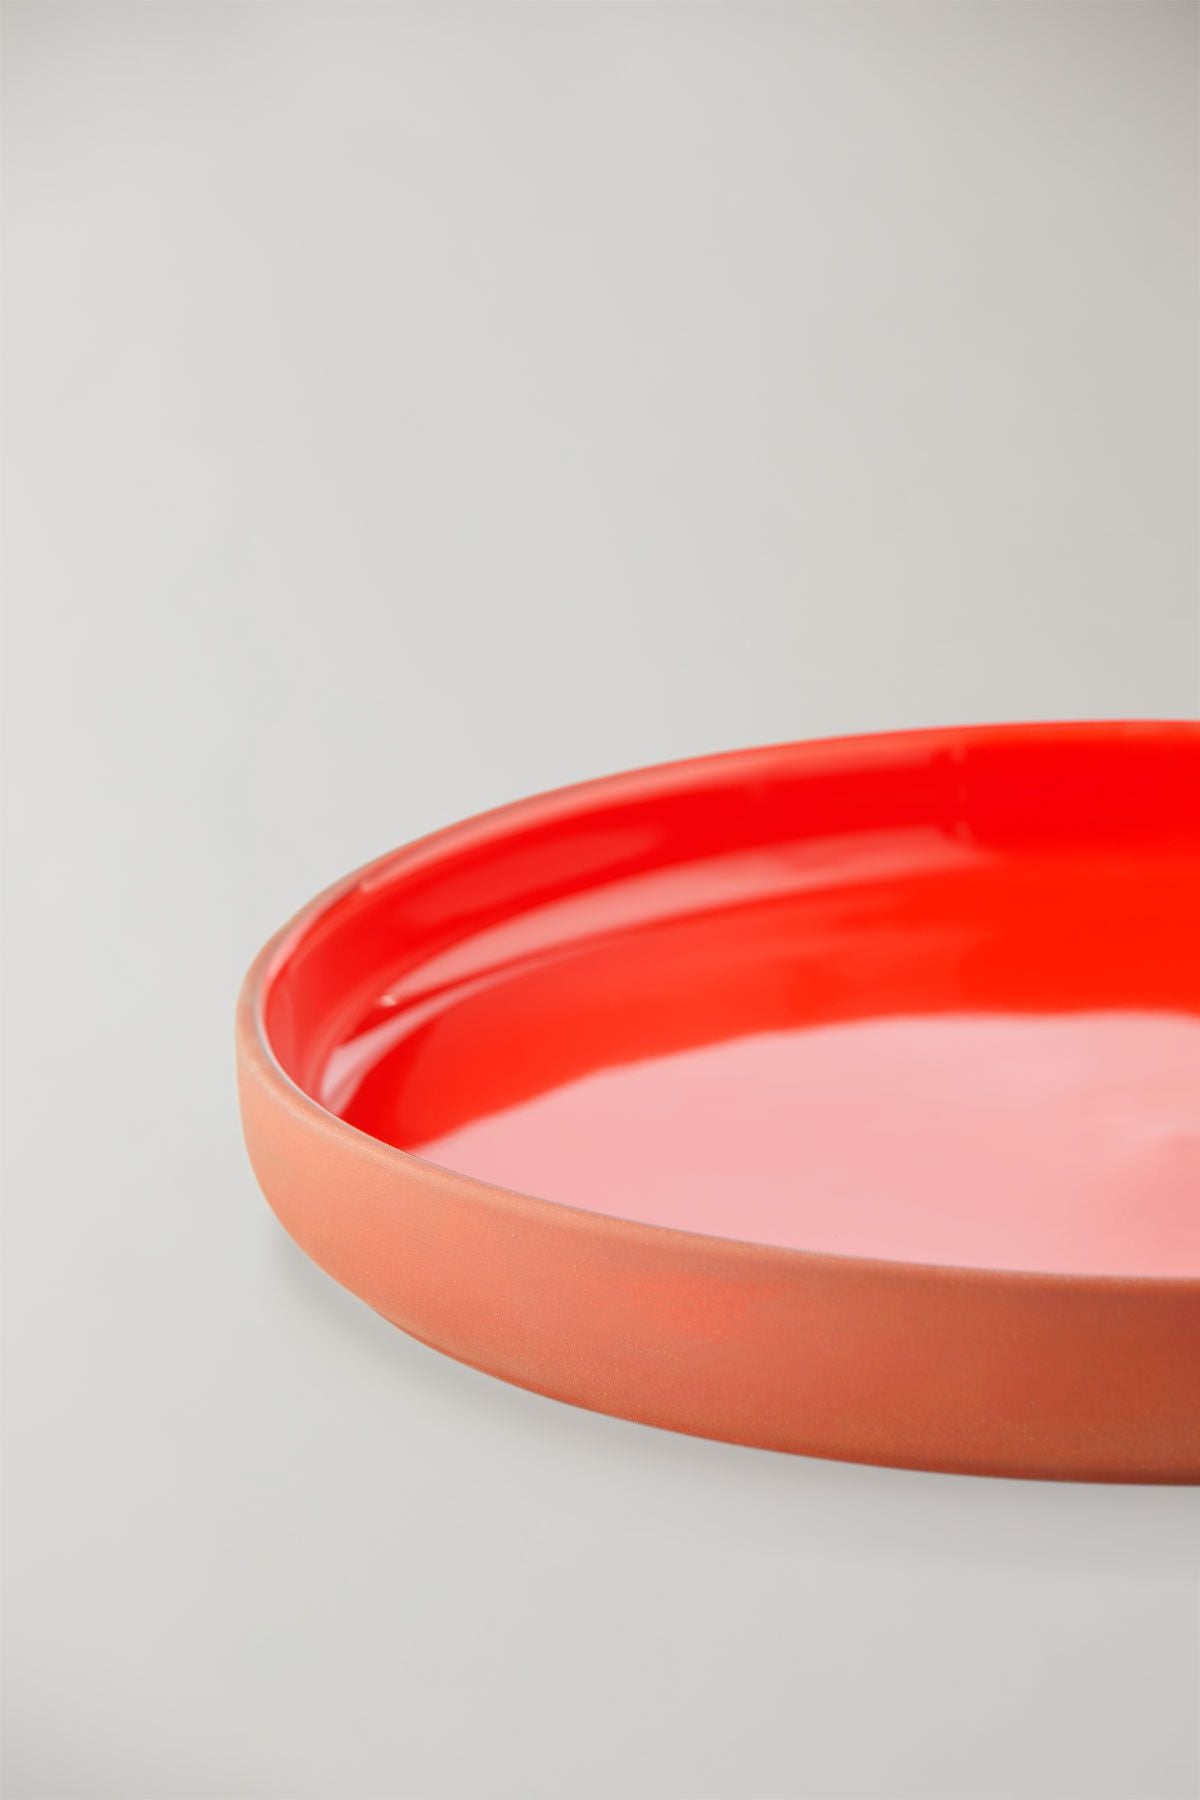 Estudio sobre Clayware para servir plato, terracota/rojo